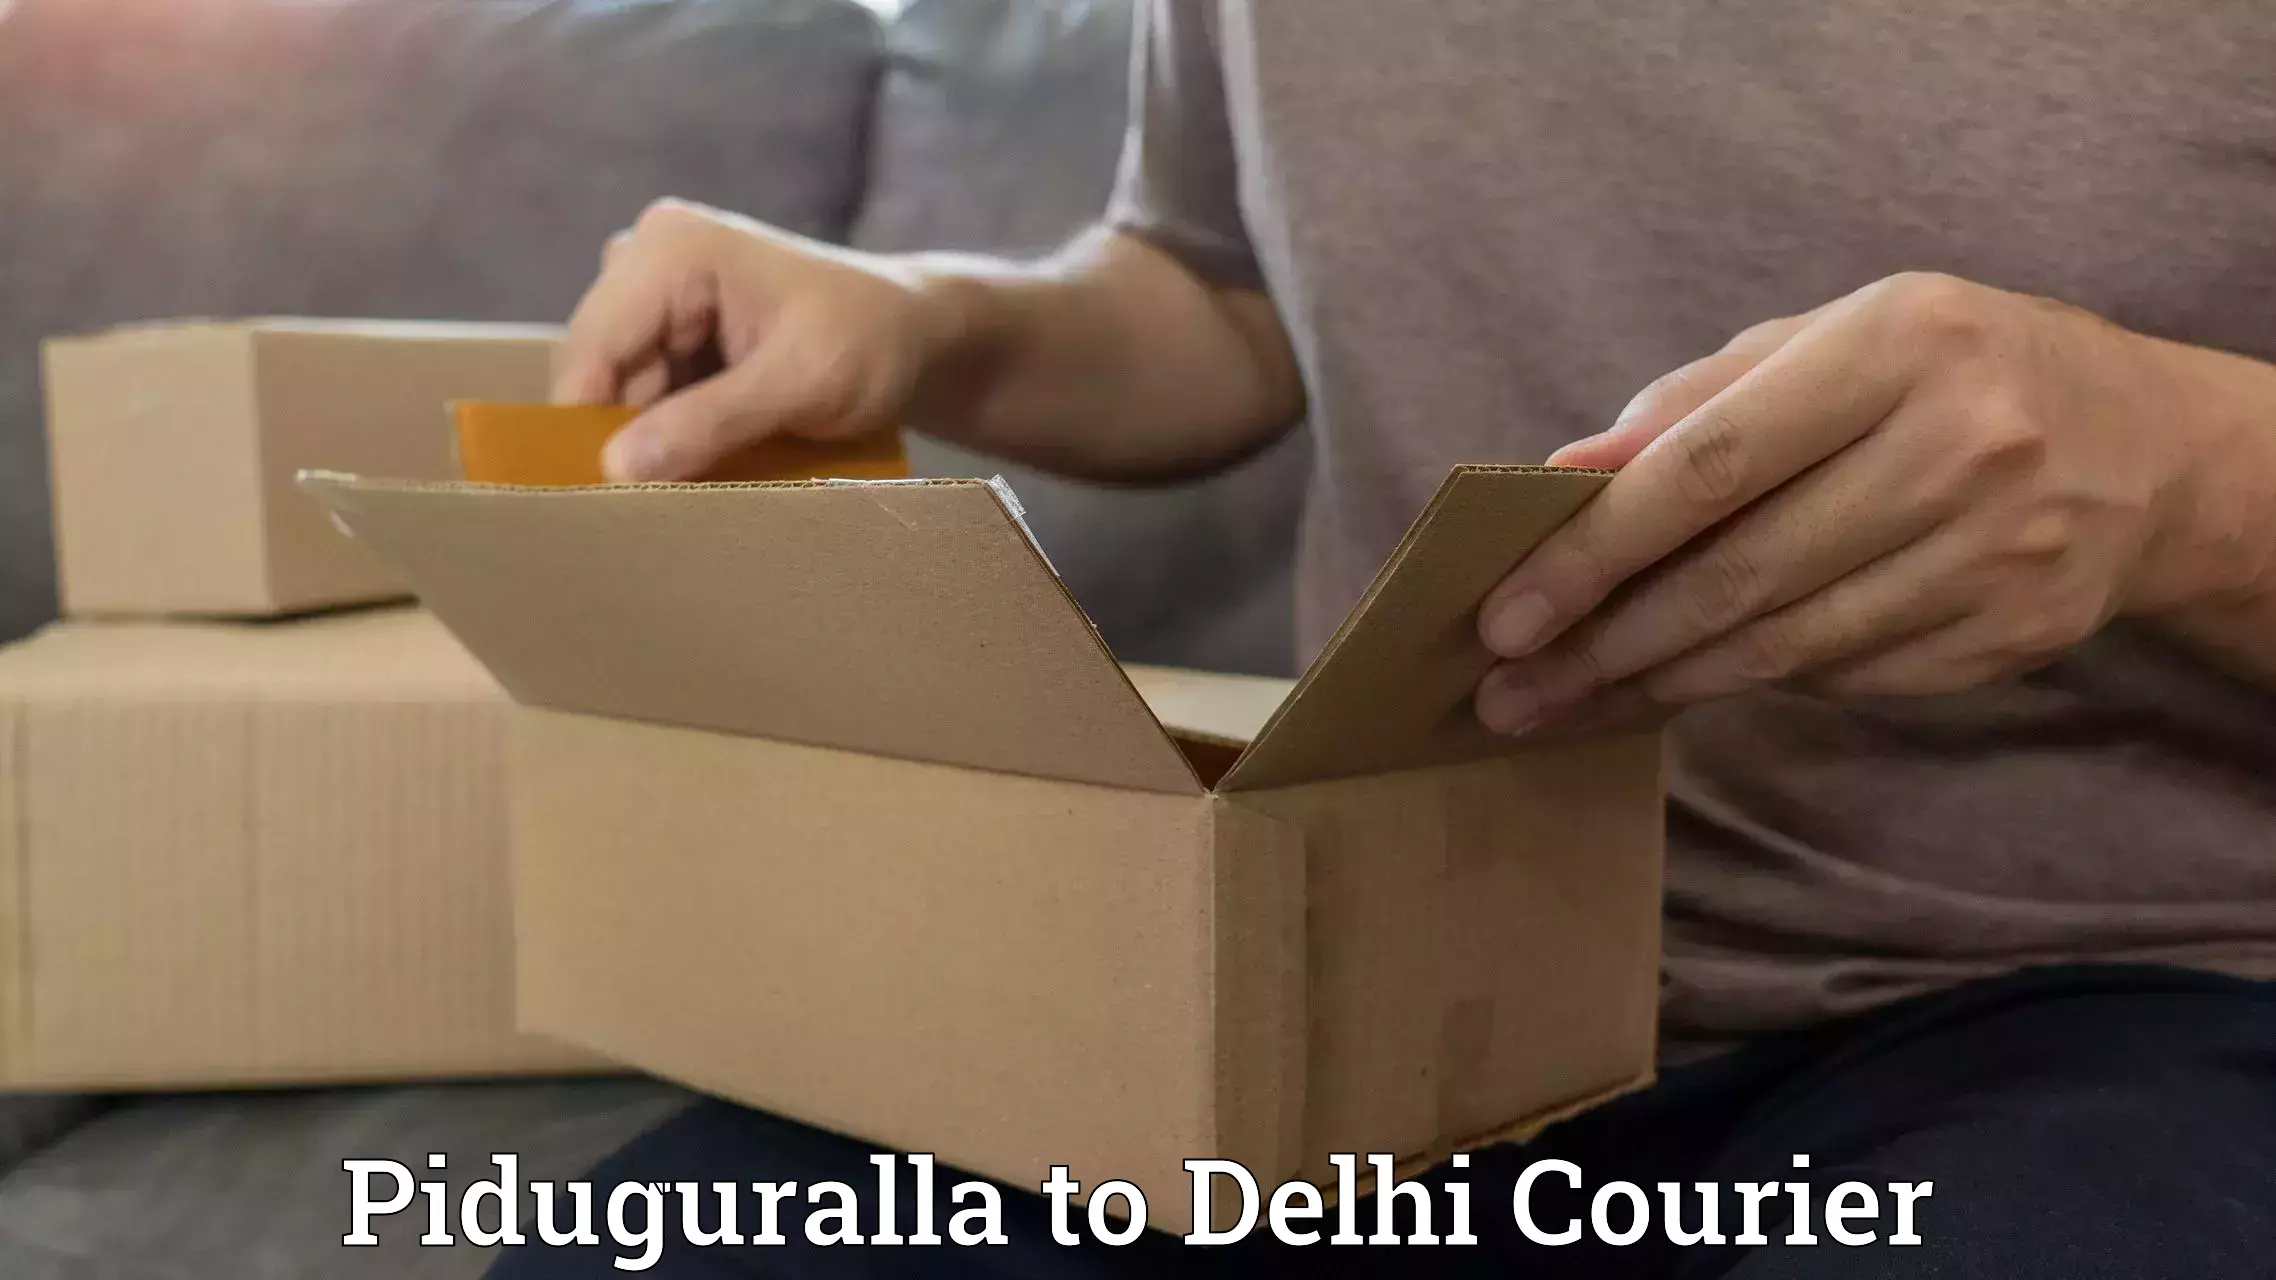 24-hour delivery options Piduguralla to Ashok Vihar